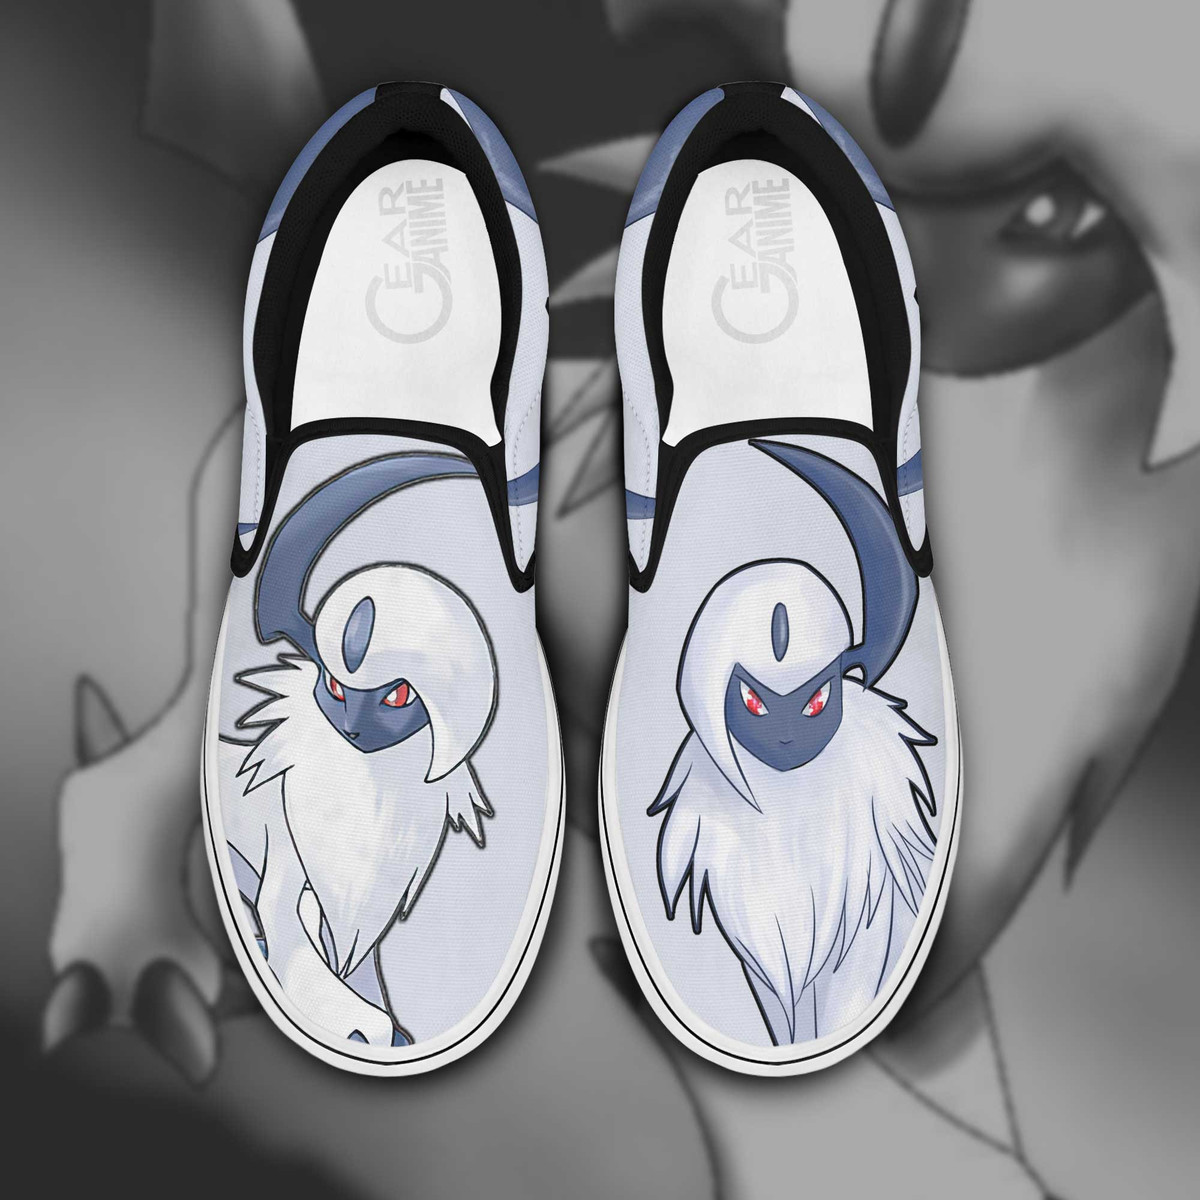 Absol Slip On Sneakers Pokemon Custom Anime Shoes - 1 - Gearotaku